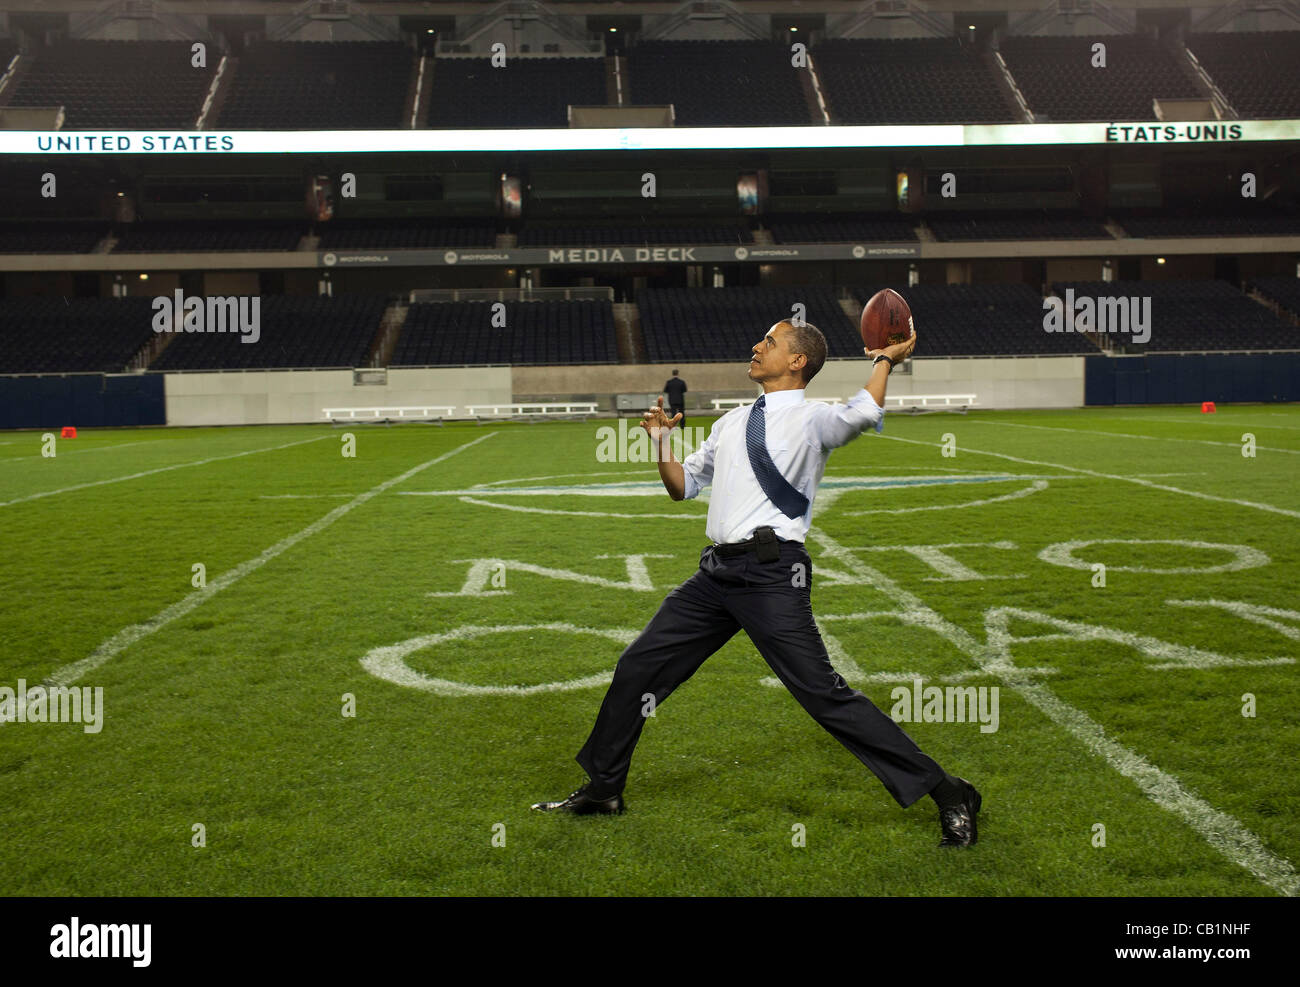 Le président américain Barack Obama lance un ballon de football à la ligne de 50 yards à Soldier Field, à la suite du Sommet de l'OTAN Dîner de travail le 20 mai 2012 à Chicago, Illinois. Le dîner a été organisé pour les dirigeants de l'OTAN à Soldiers Field, domicile de l'équipe de football professionnel Chicago Bears. Banque D'Images